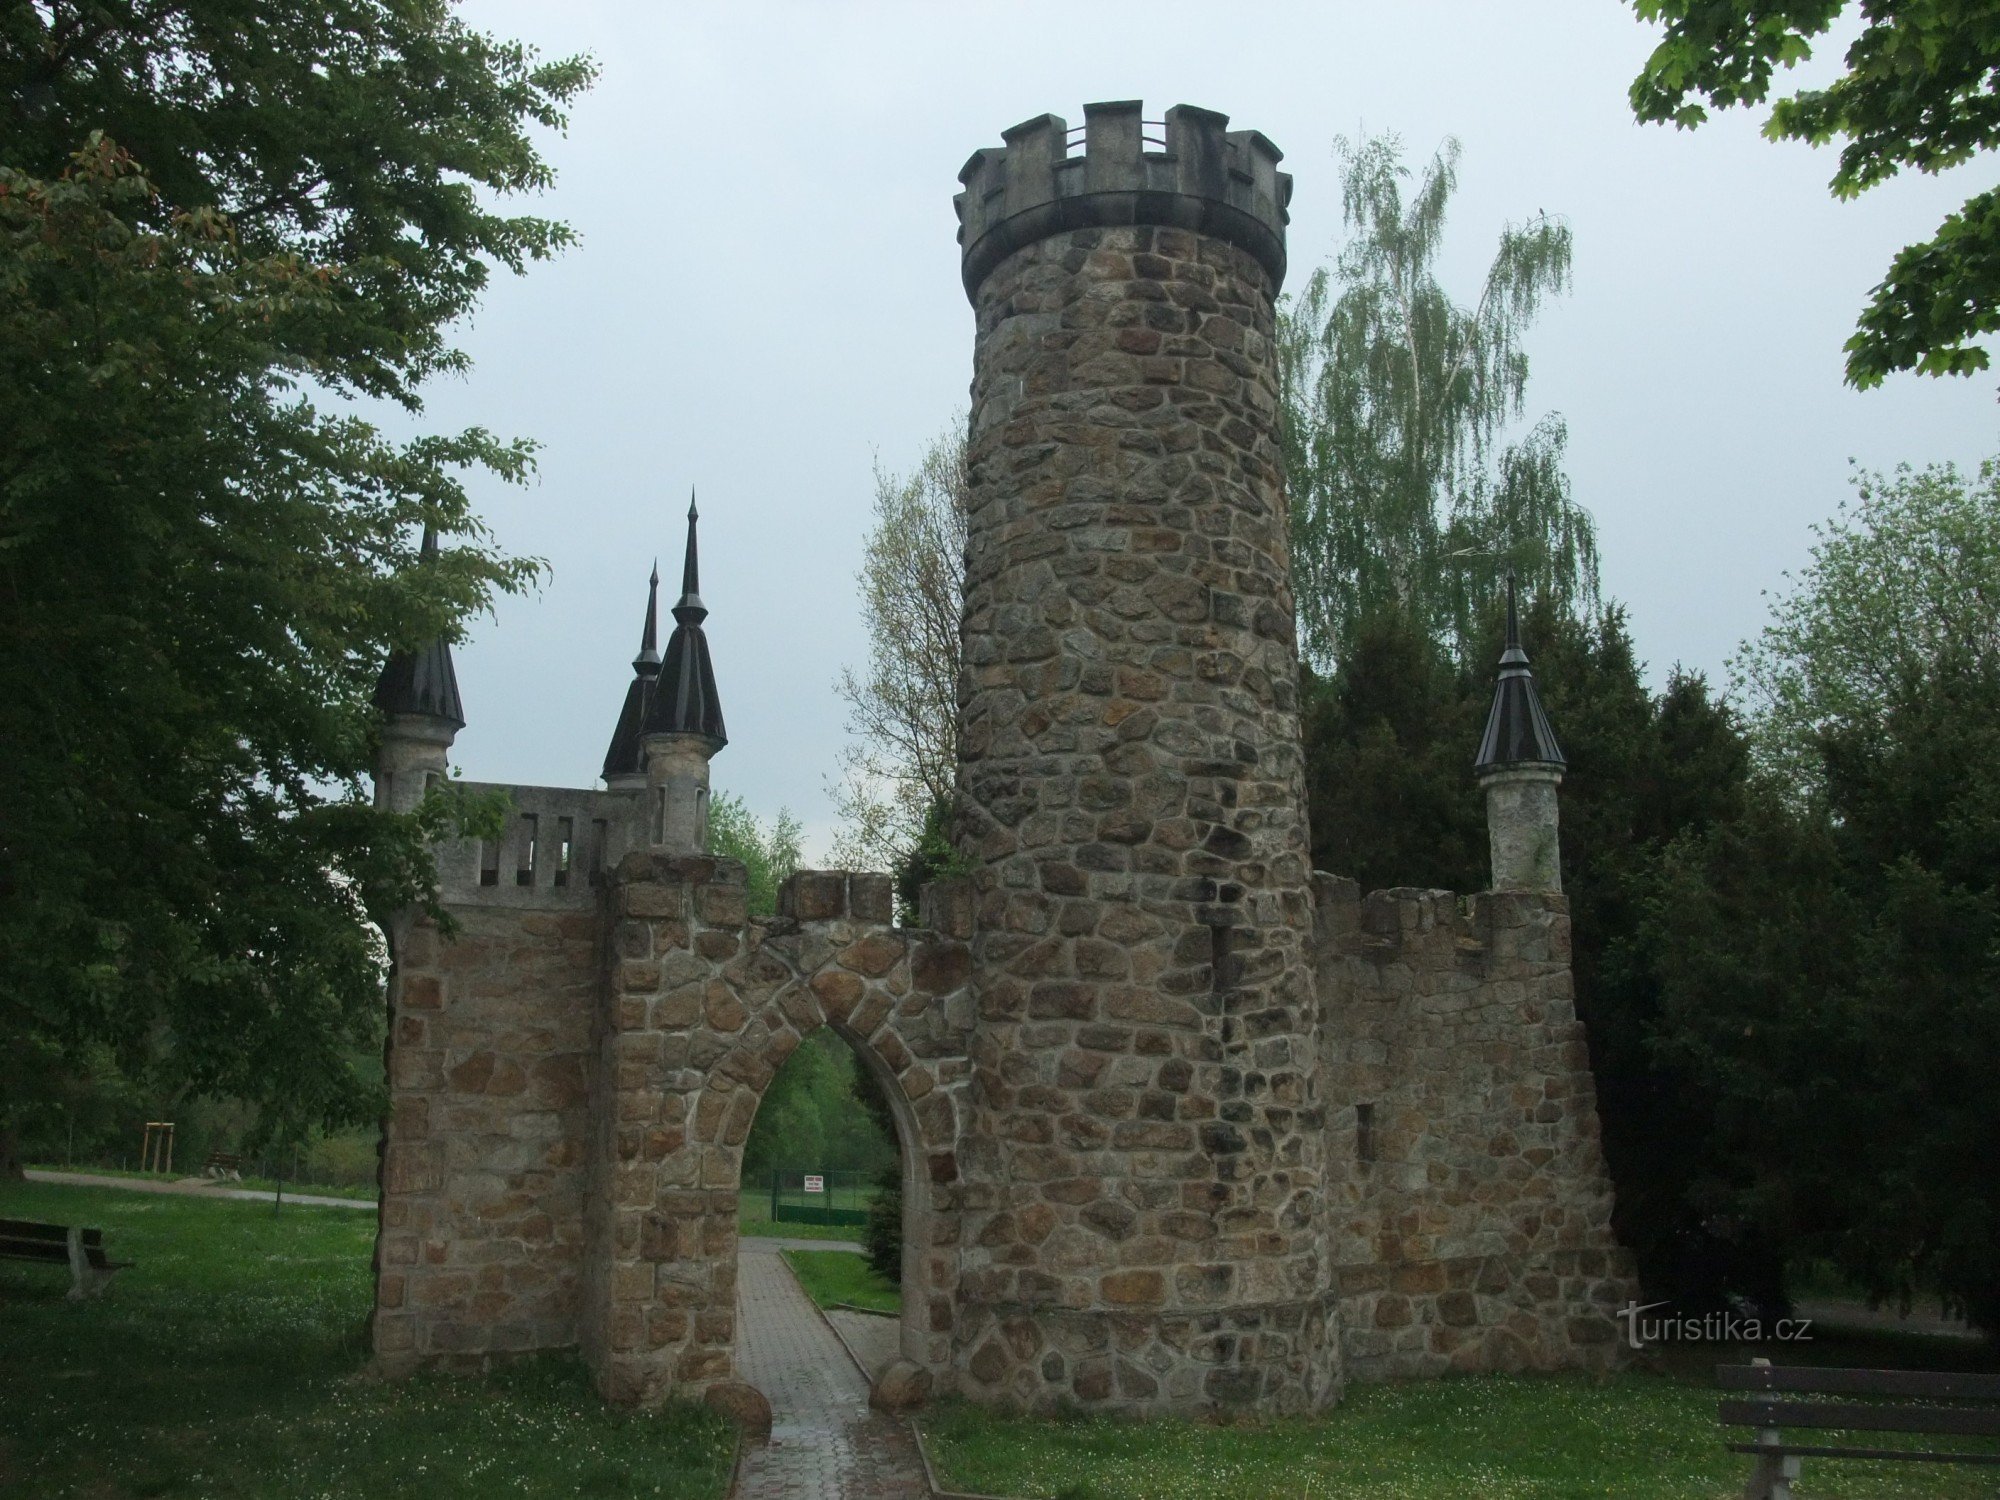 Необычная смотровая башня Залингбург во Франтишковы Лазне